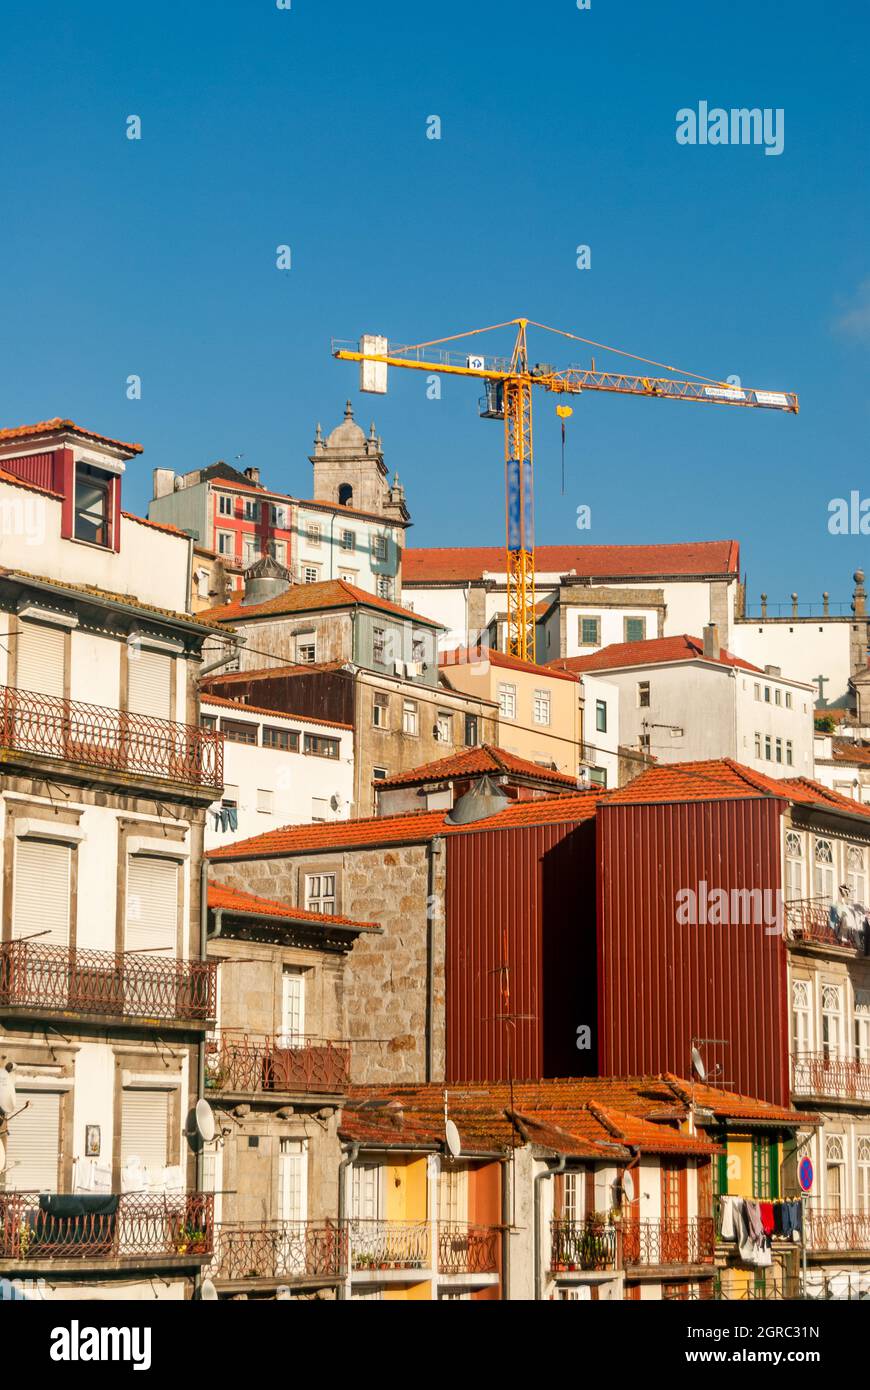 Vue typique de la ville de Porto avec de vieilles rues étroites et des maisons colorées à proximité l'une de l'autre en montant la colline et la grue d'élévation historique urbaine Banque D'Images